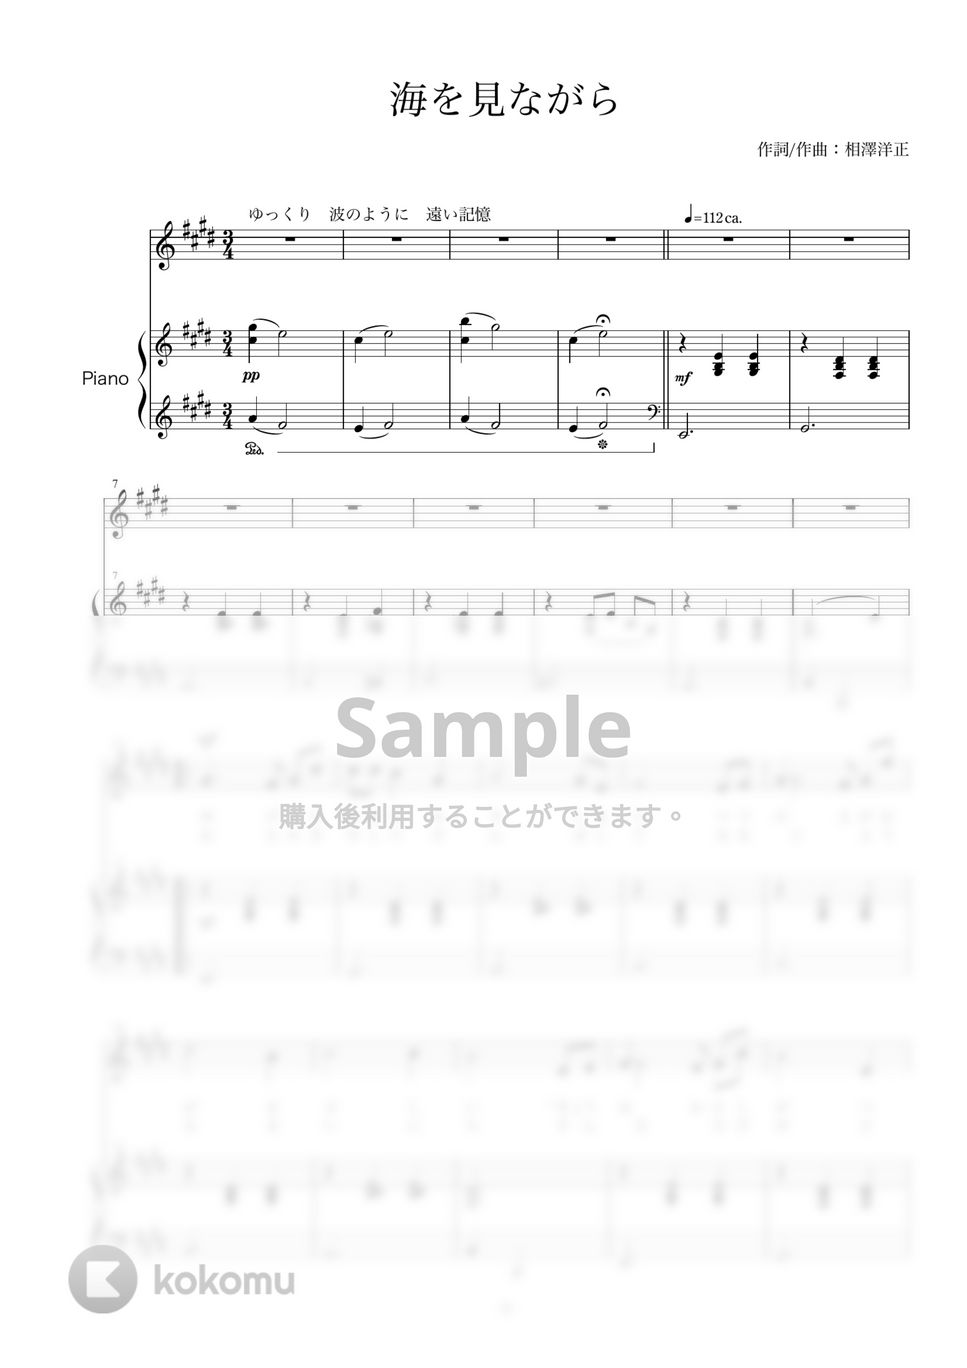 相澤洋正 - 海を見ながら (ソプラノ用歌（ソプラノ+ピアノ）)